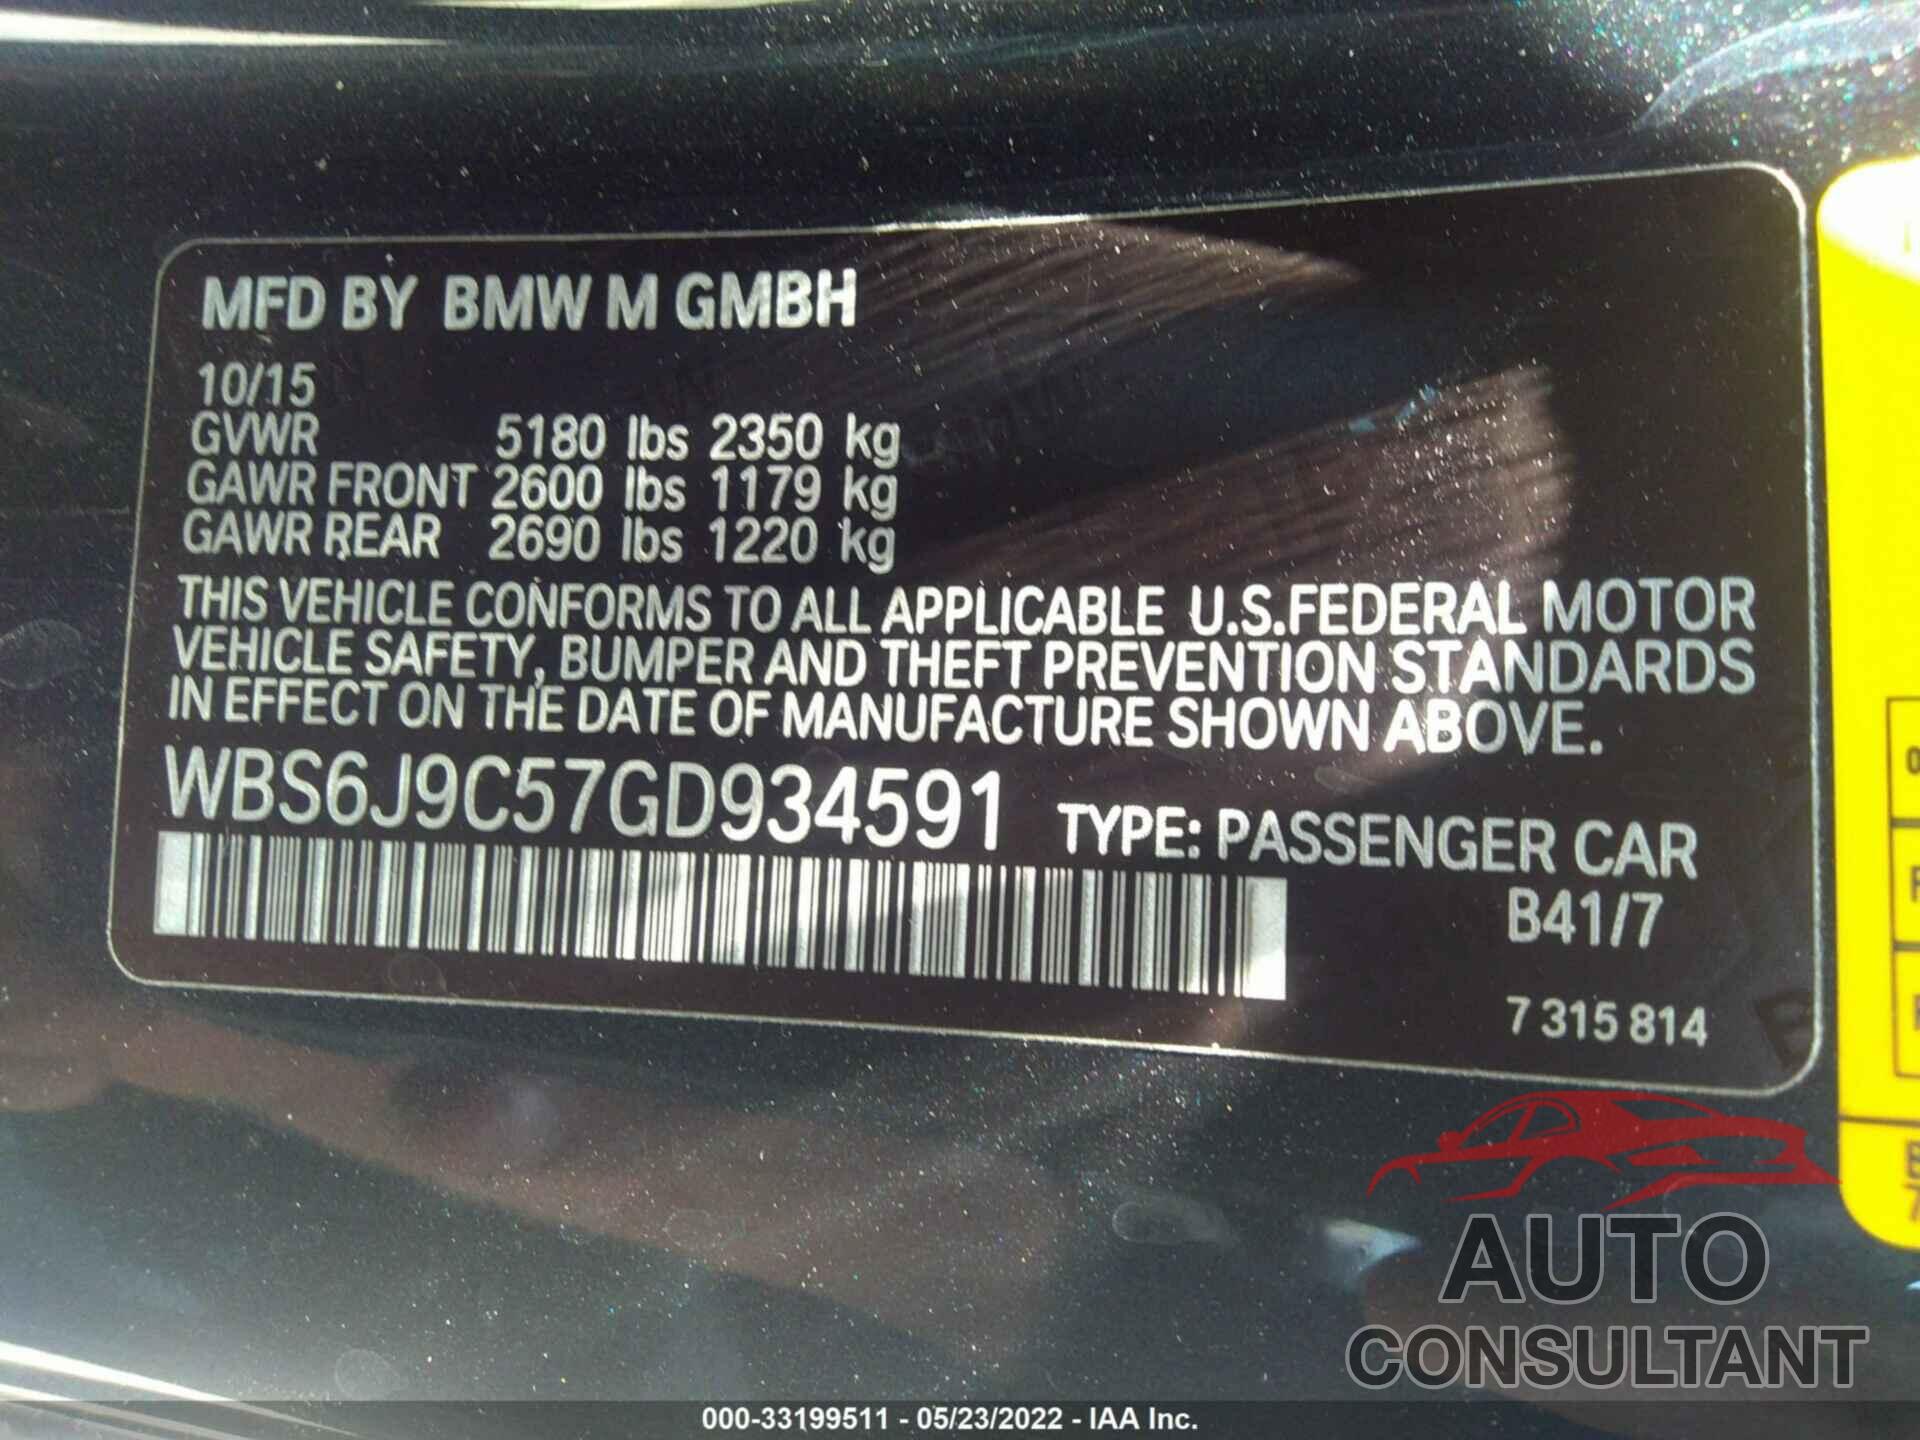 BMW M6 2016 - WBS6J9C57GD934591